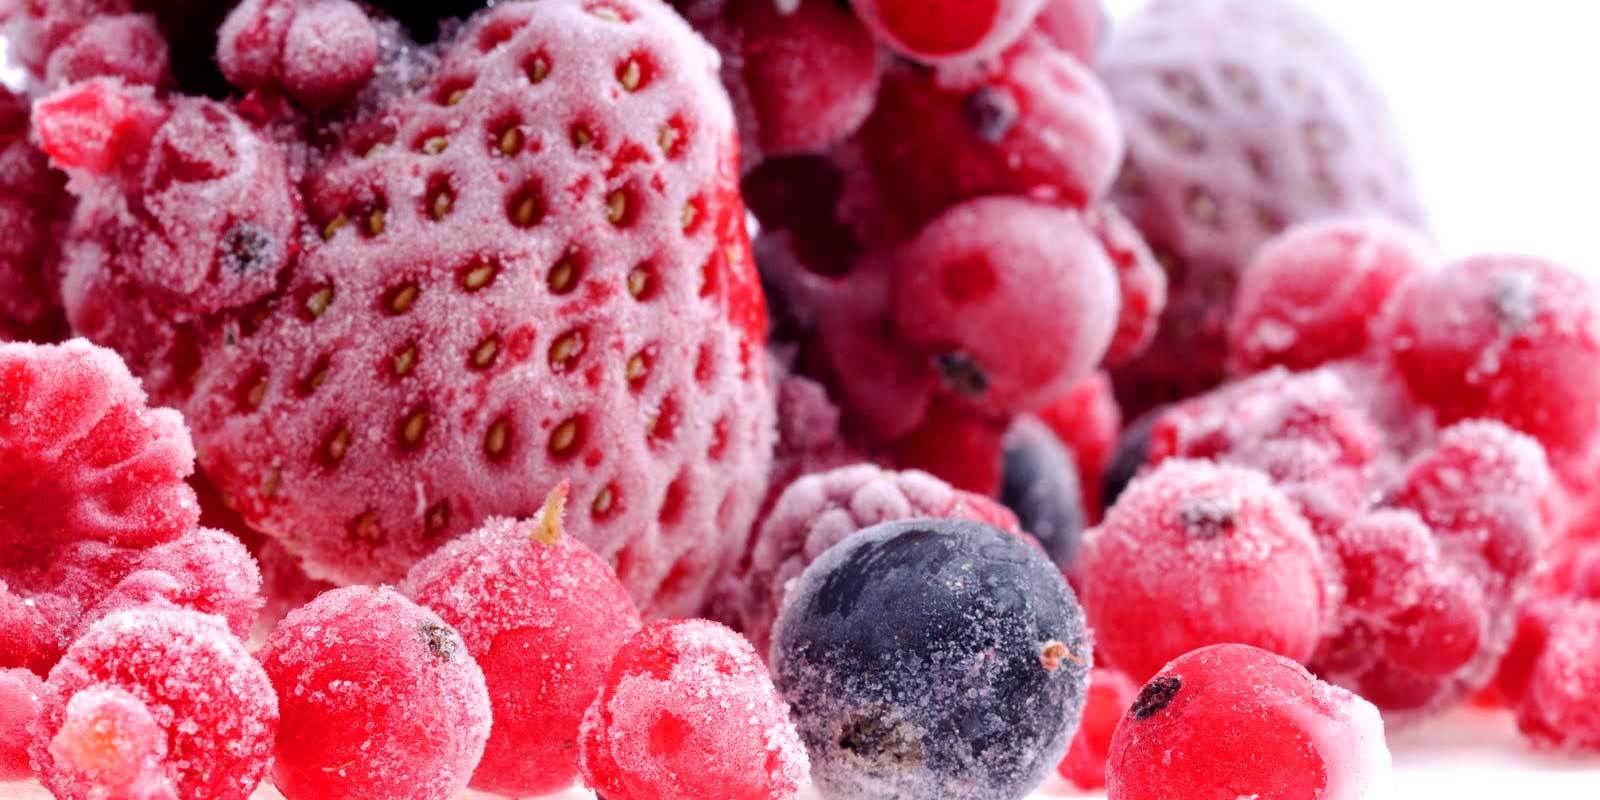 Frutas y verduras congeladas Ya sea para un helado casero, tus propias mermeladas o un delicioso pastel con fruta congelada, tienes en stock las cantidades adecuadas. No hace falta ningun tipo de magia para procesar fruta congelada de forma espontanea.